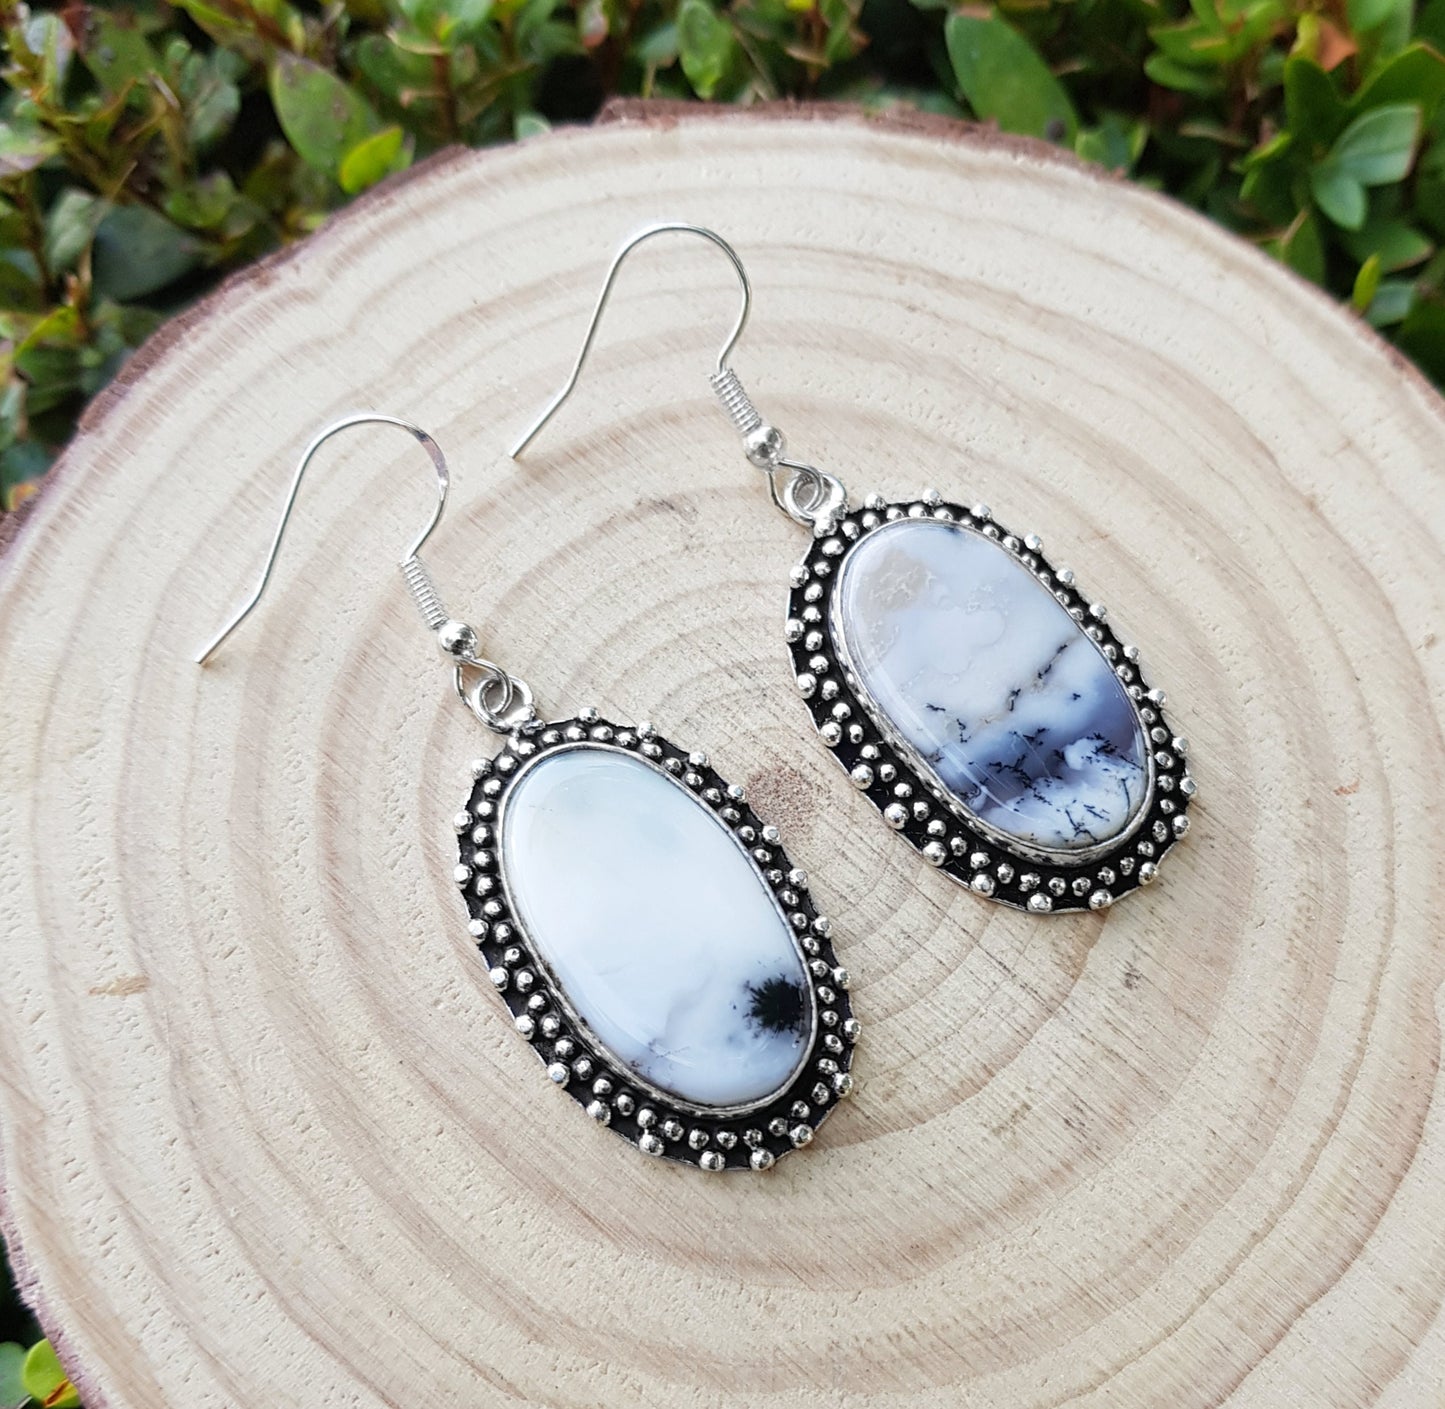 Dendrite Opal Earrings In Sterling Silver Boho Earrings Dangle Earrings GypsyJewelry Unique Gift For Women